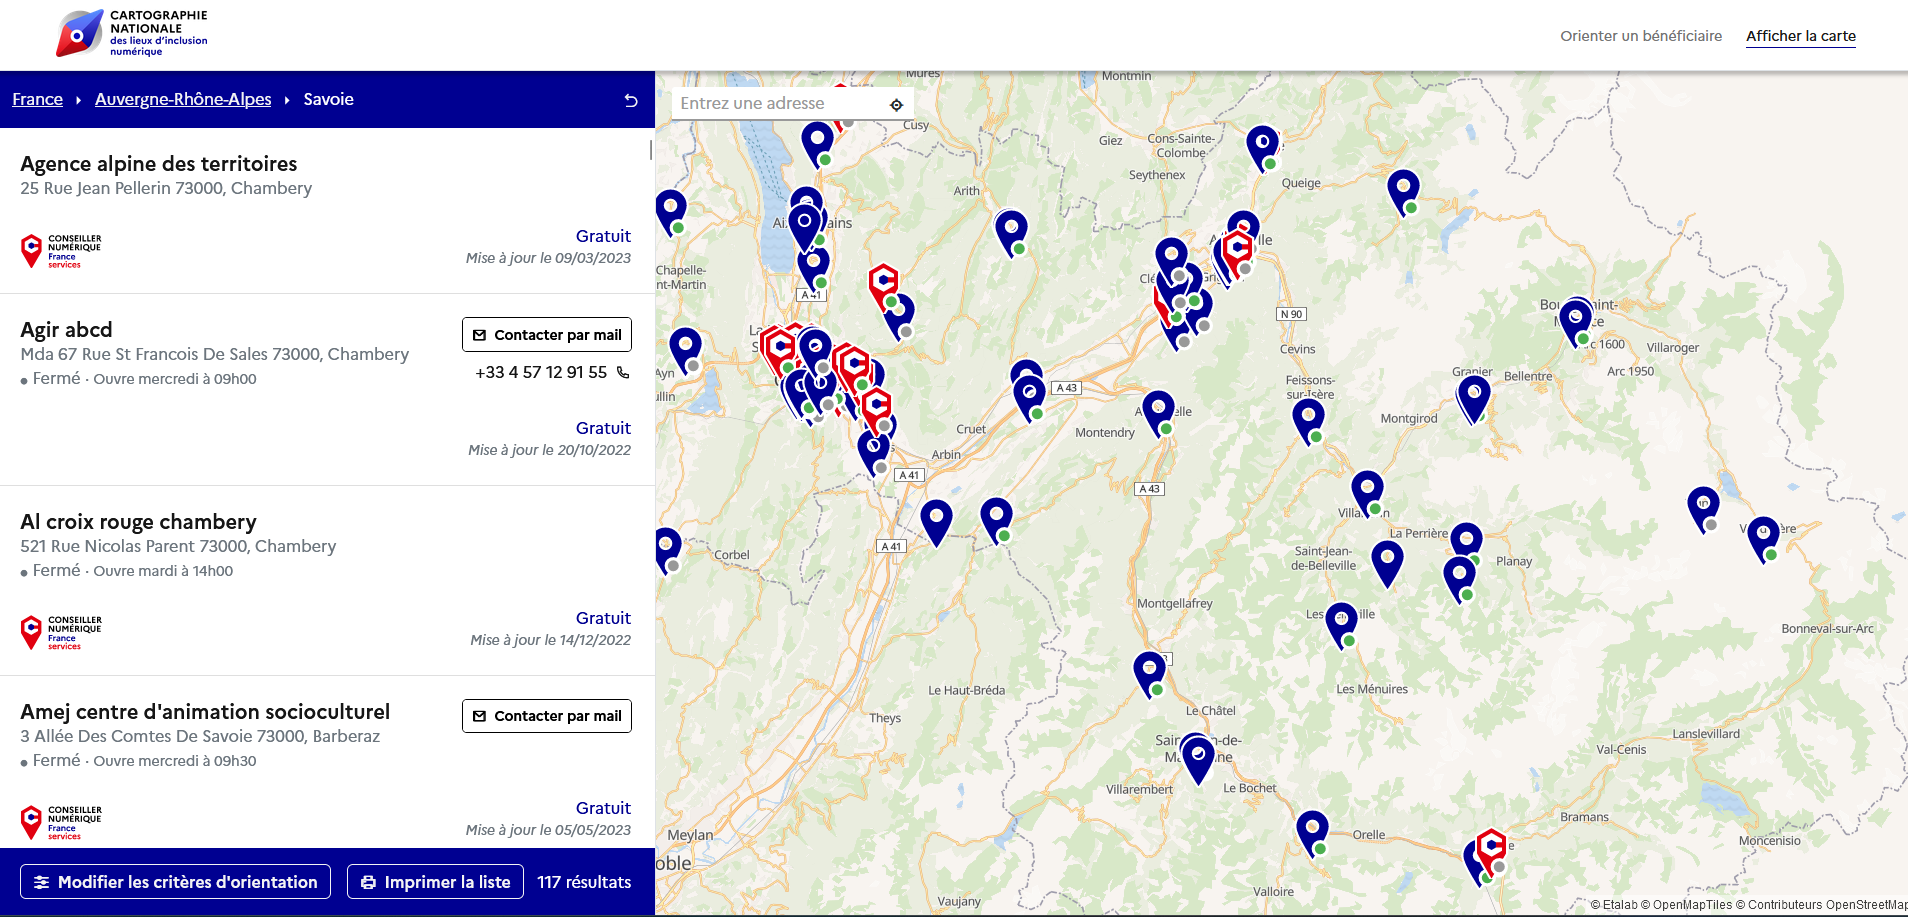 Cartographie Nationale des Conseillers numériques 
Lien vers: https://cartographie.societenumerique.gouv.fr/cartographie/regions/Auvergne-Rh%C3%B4ne-Alpes/Savoie